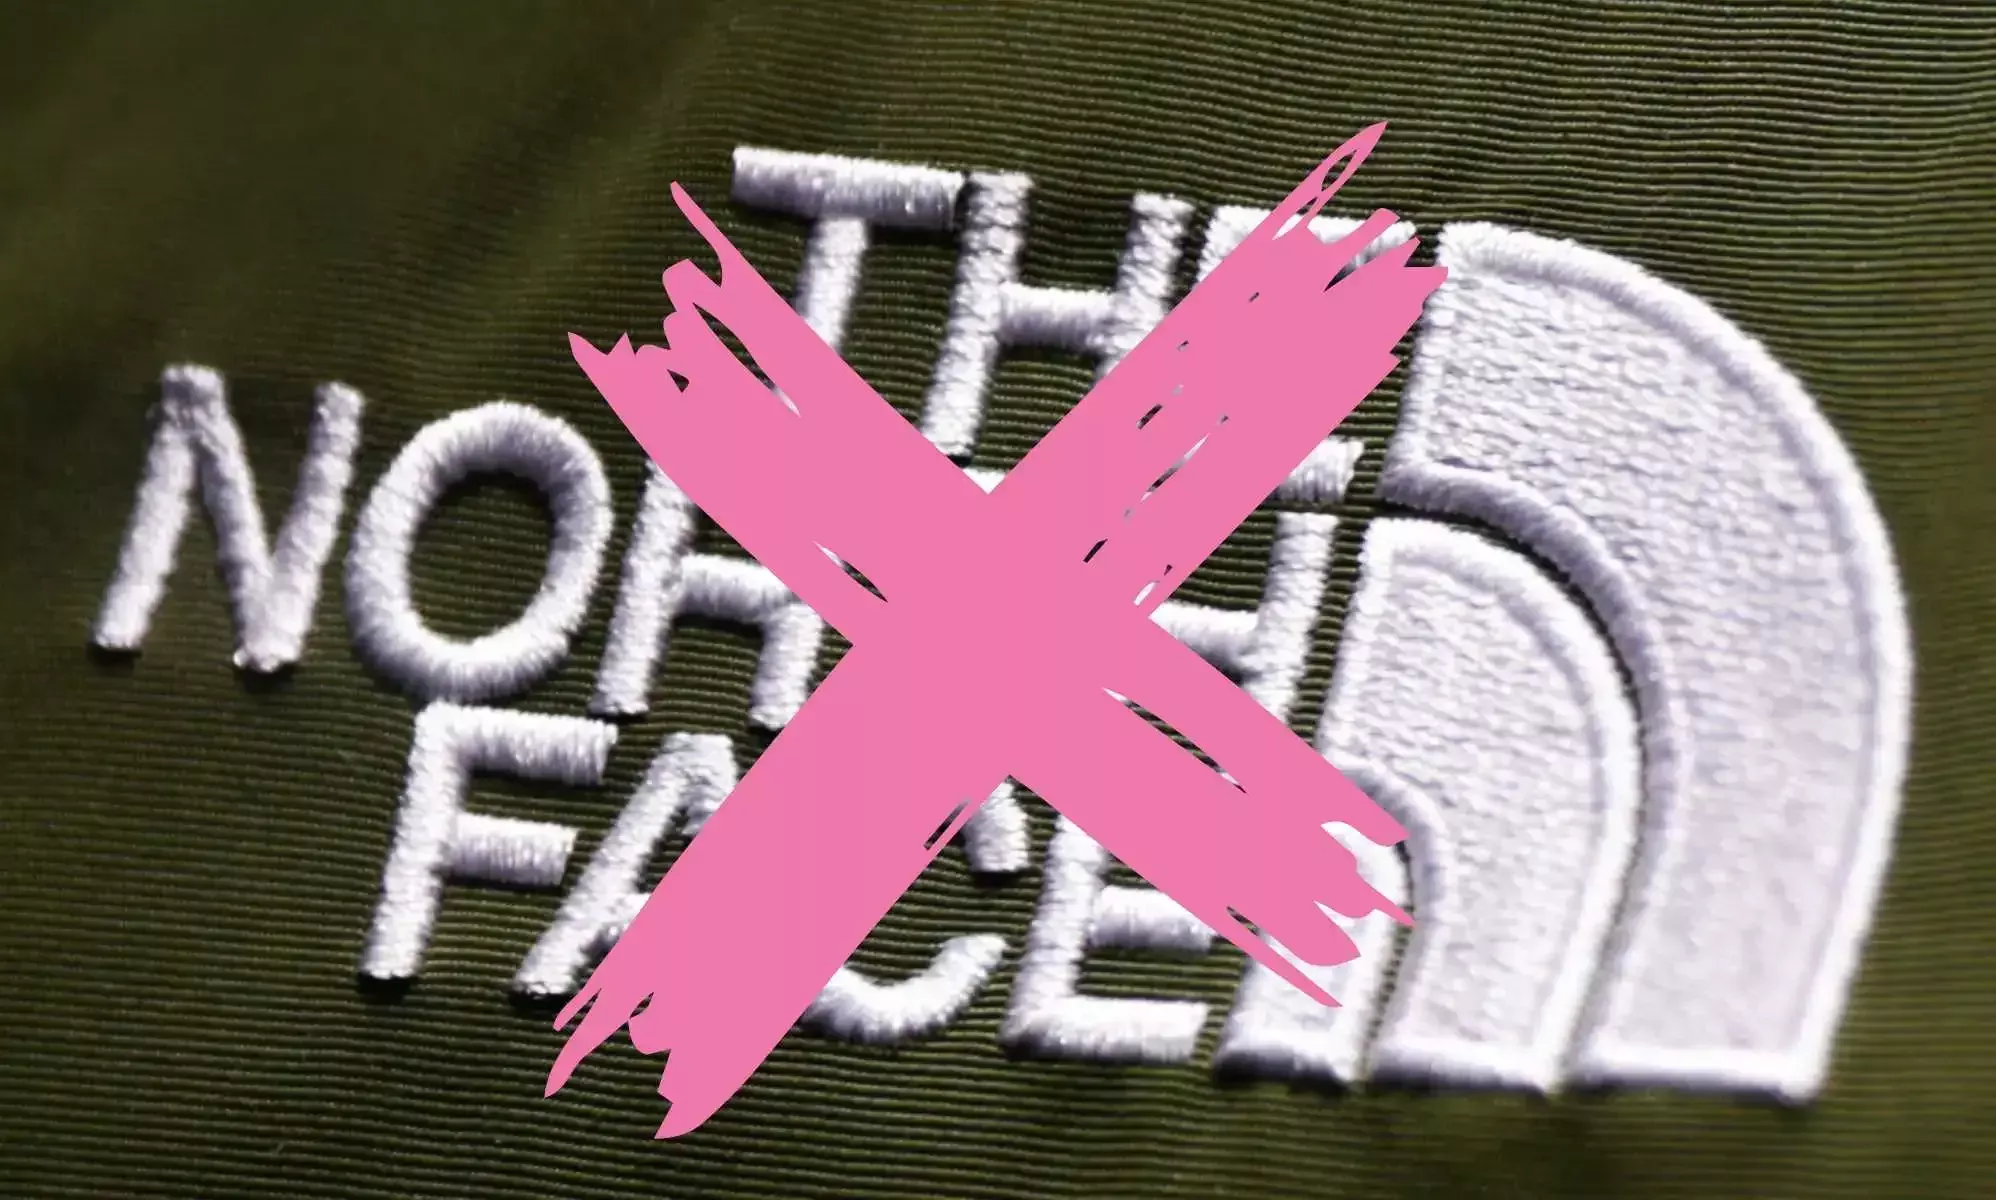 The North Face se enfrenta a llamamientos al boicot por su apoyo a los campamentos de verano LGBTQ+.